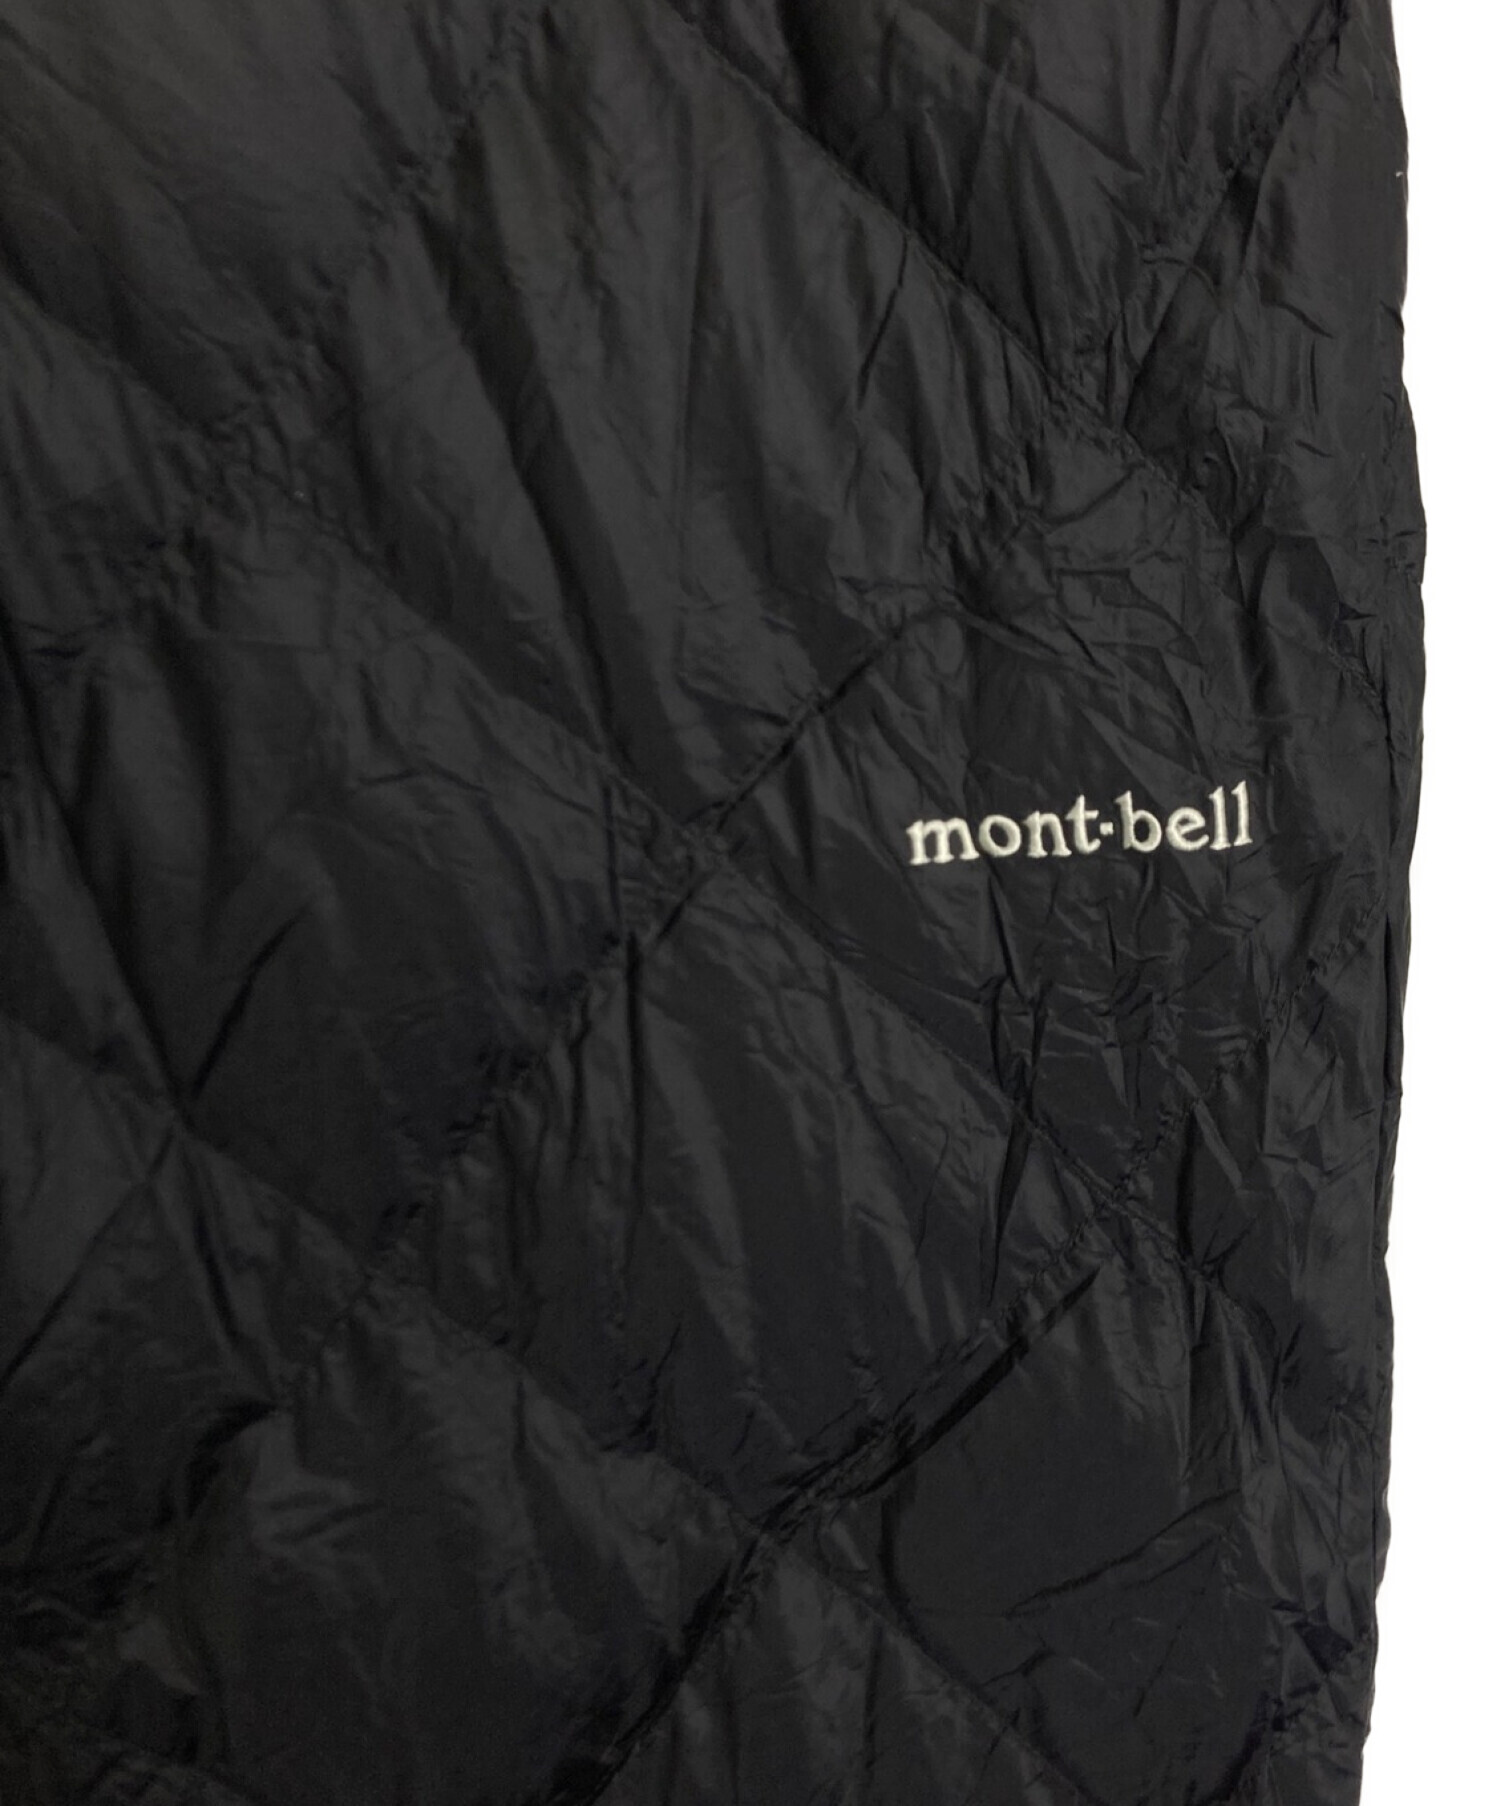 mont-bell (モンベル) スペリオダウンパンツ ブラック サイズ:M